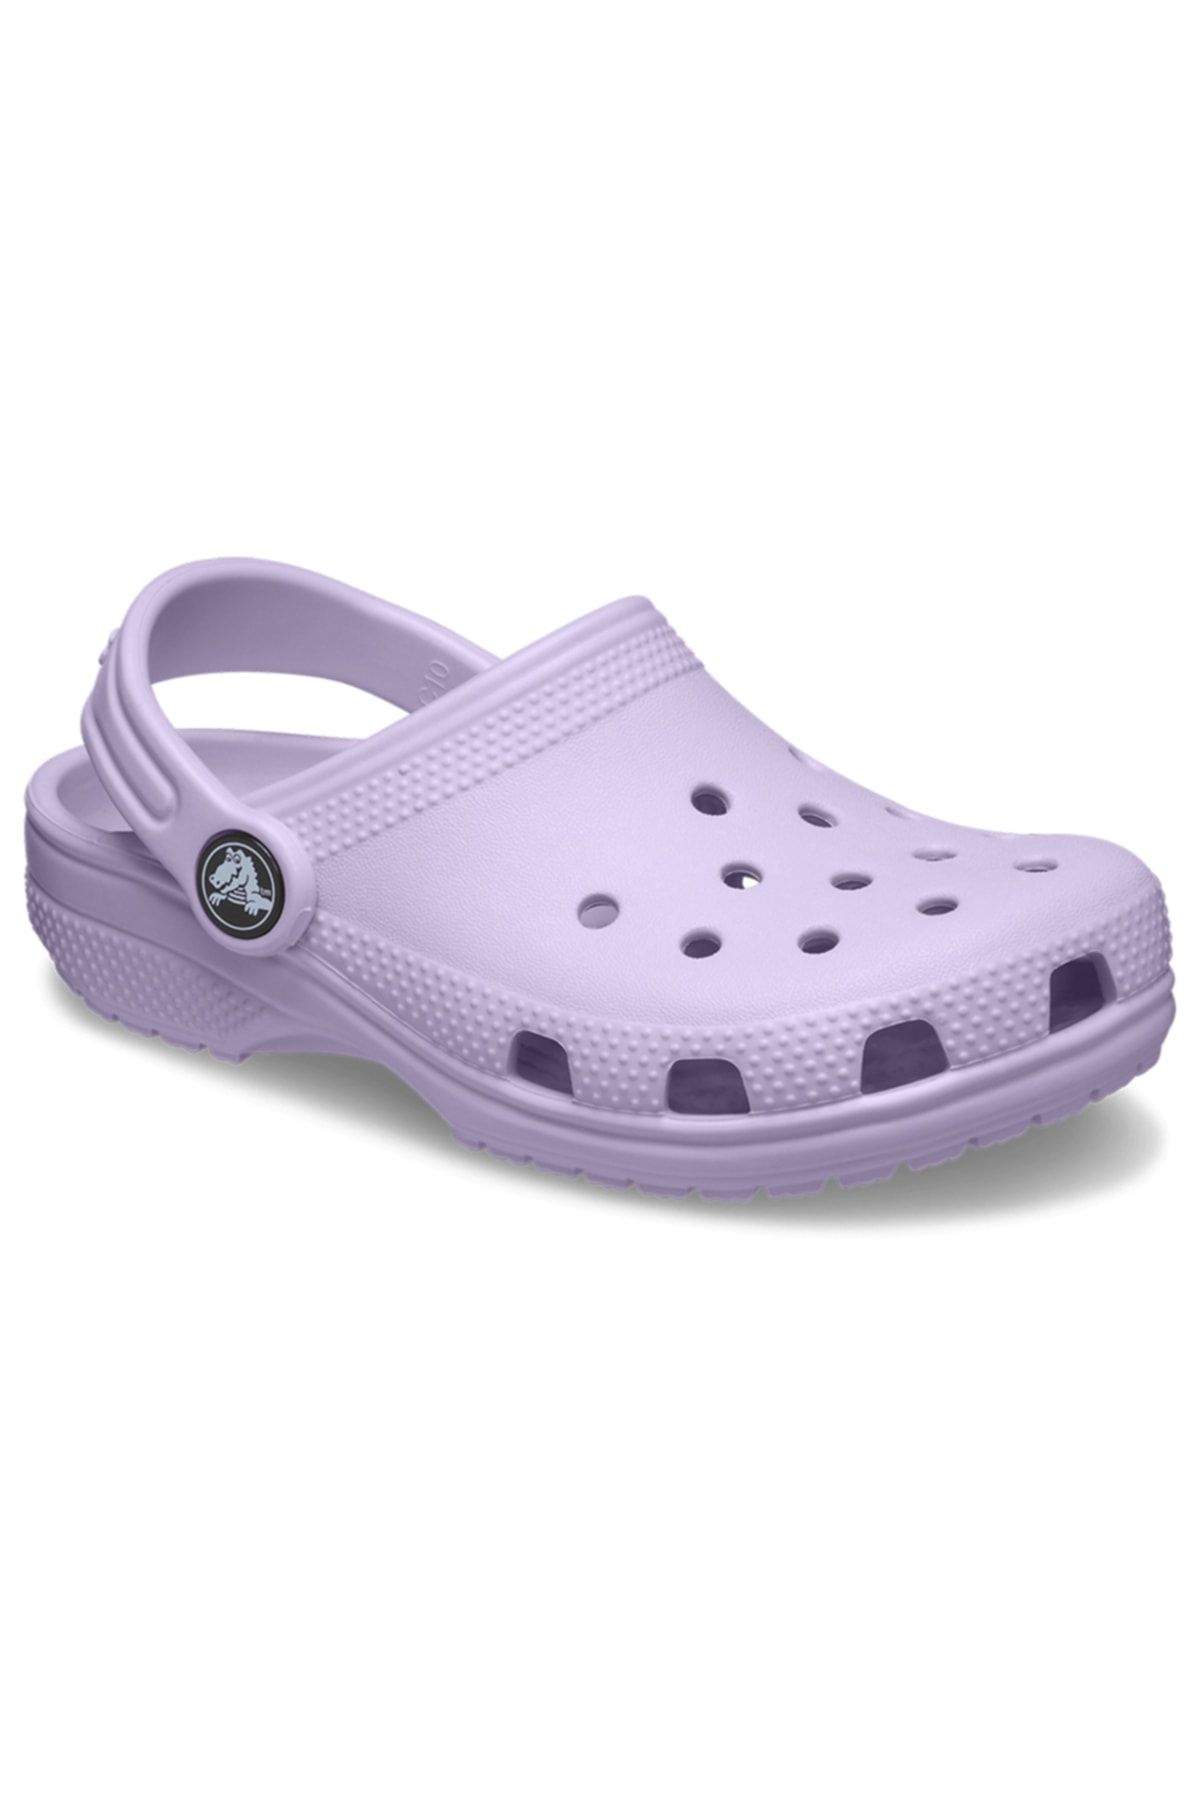 Crocs 206990-530 Toddler Classic Clog Çocuk Terlik